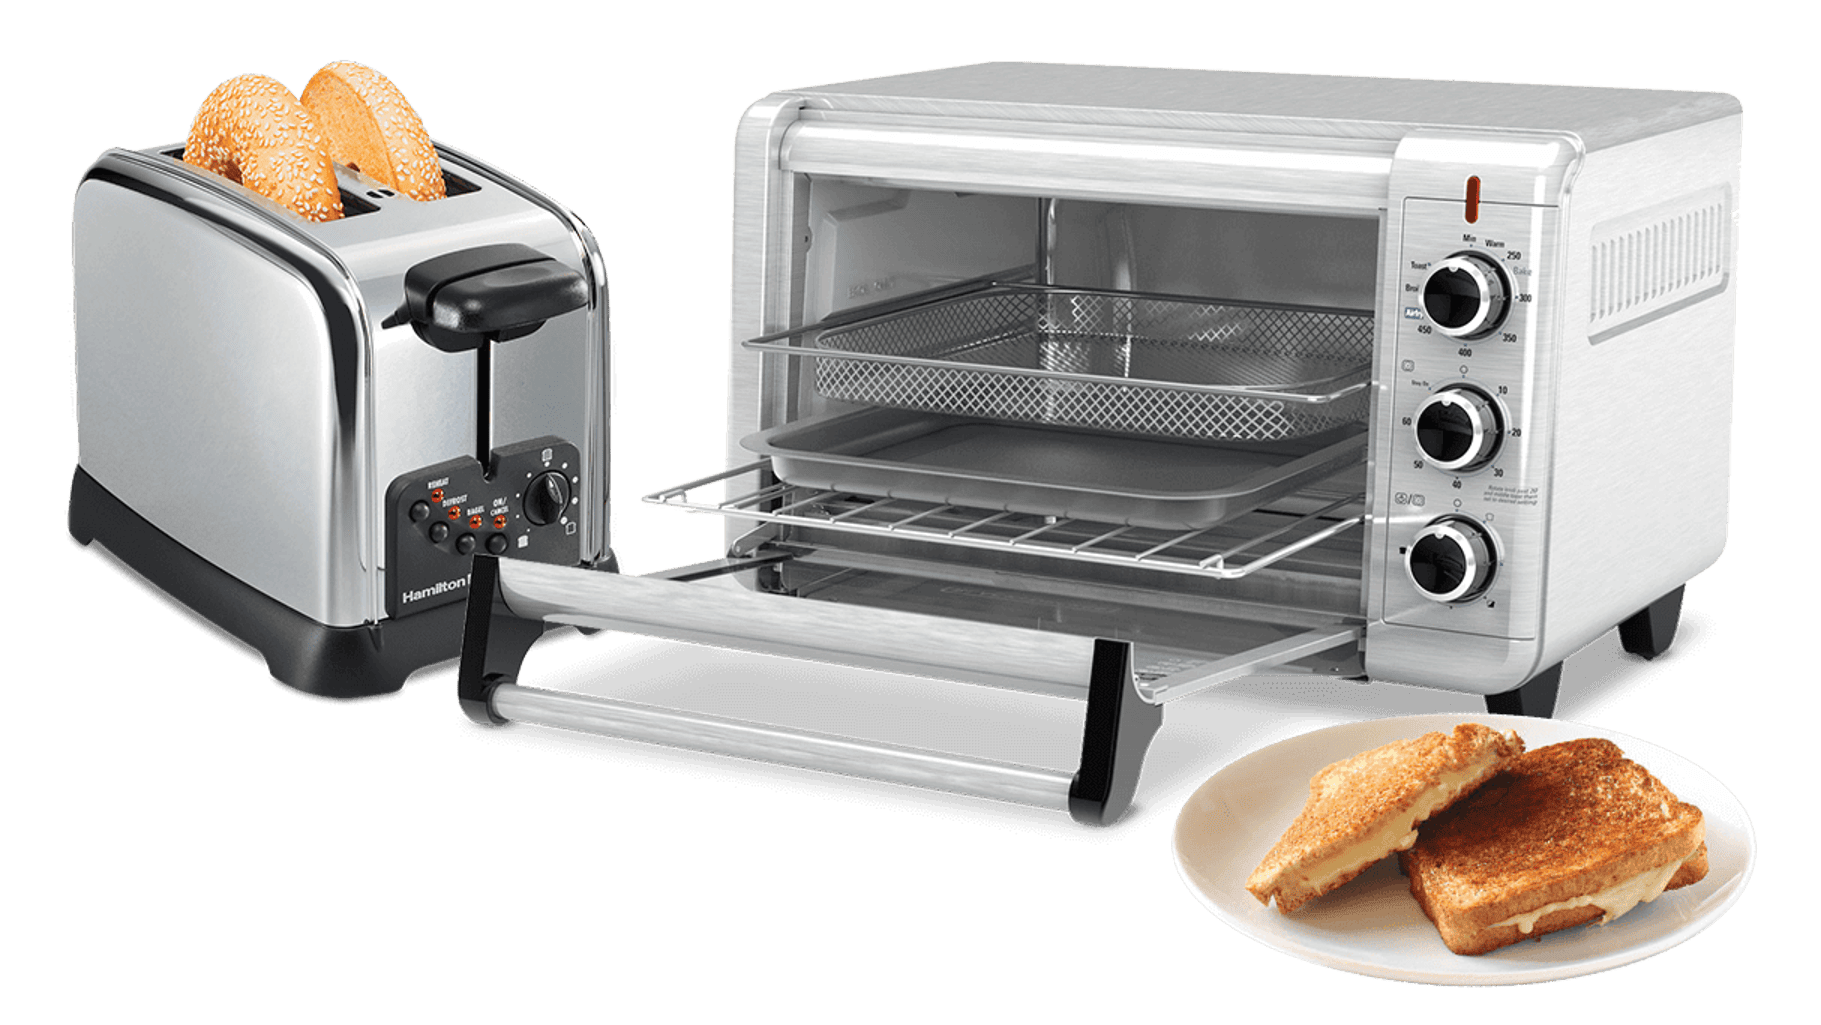 Le four grille-pain, une solution astucieuse pour les cuisinettes - Blogue  Best Buy